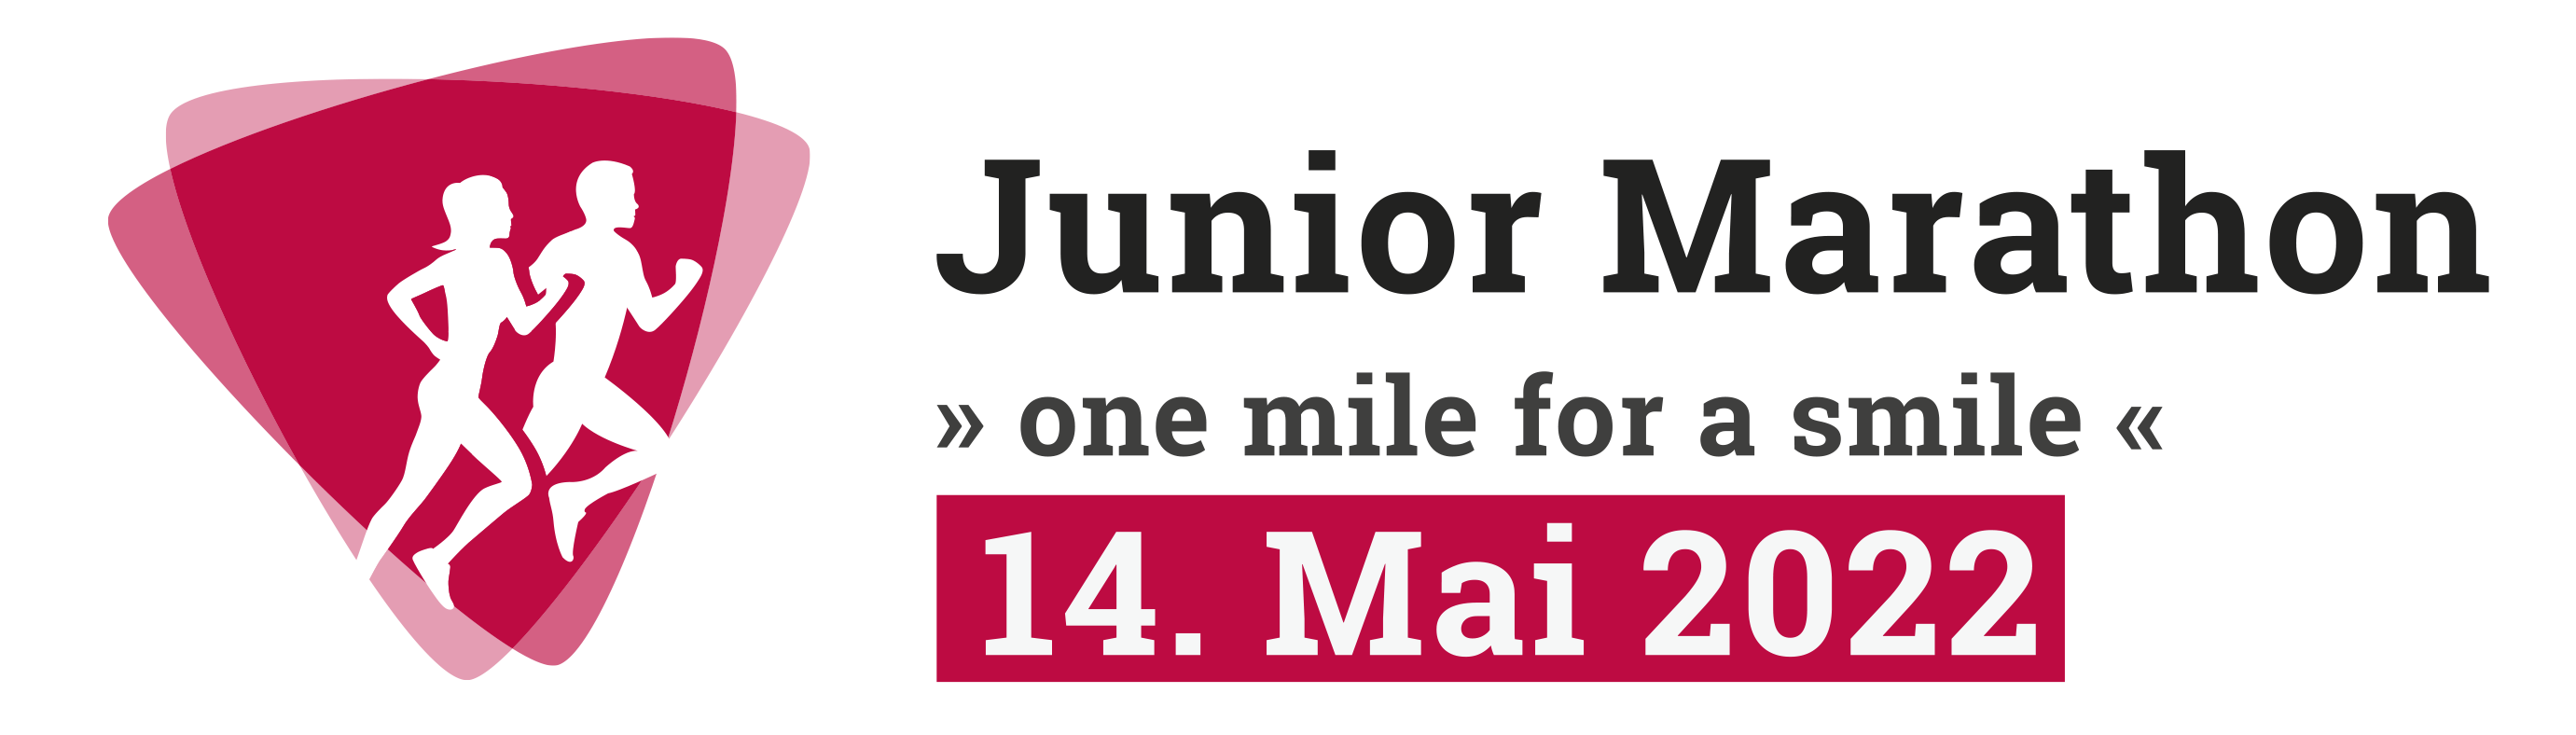 Junior Marathon